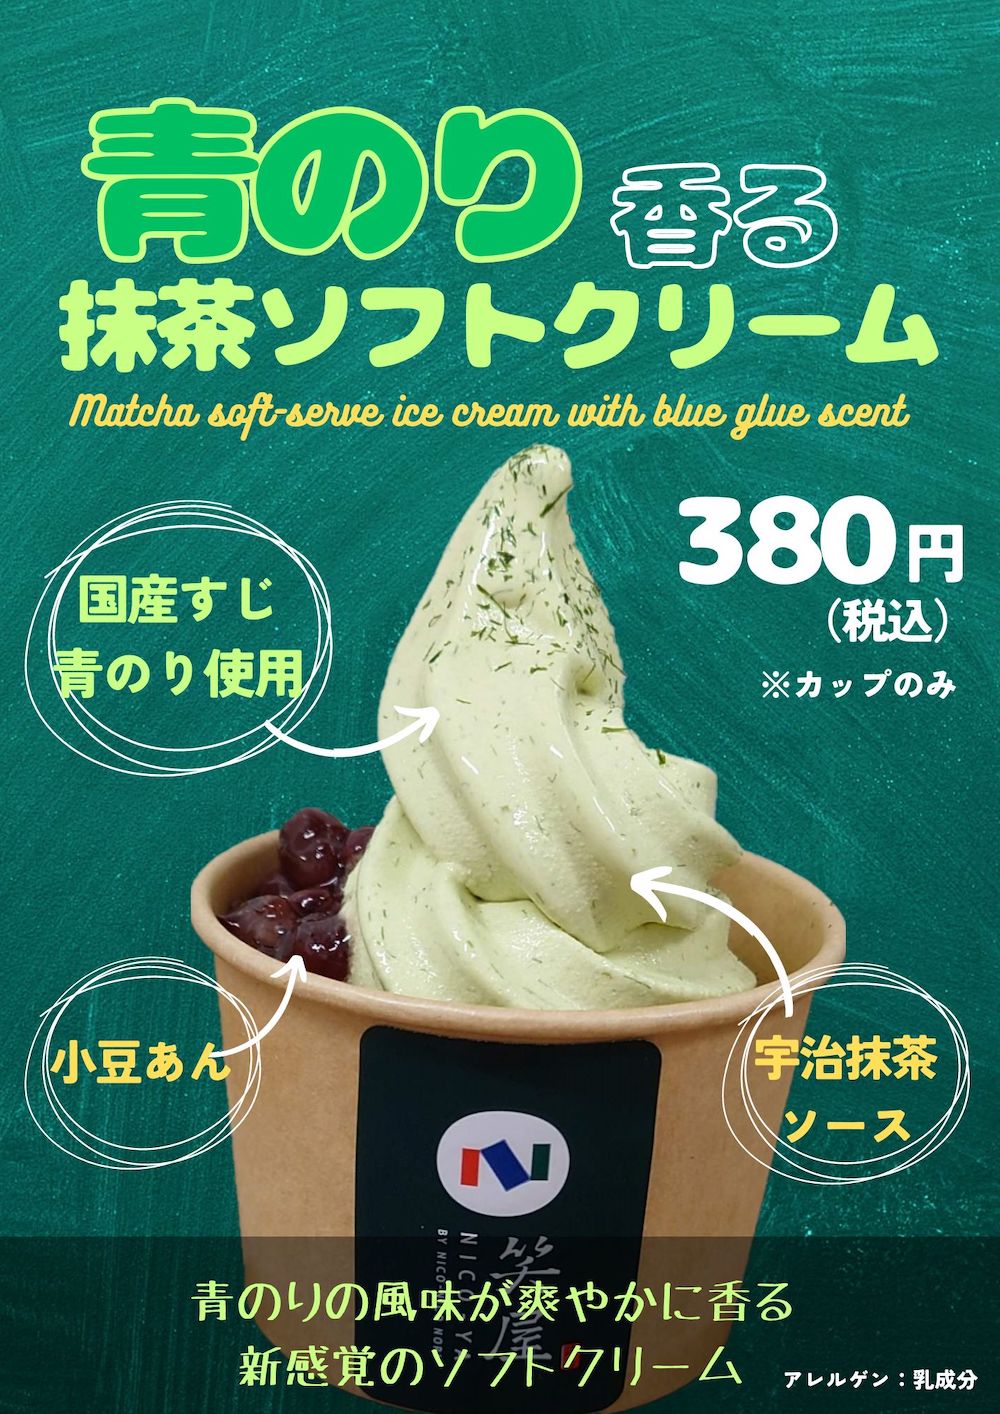 おにぎり・おにぎらず専⾨店「笑屋 NICO-YA 京都ポルタ店」は7月13日より、新レギュラーメニュー「青のり香る抹茶ソフトクリーム」の販売を正式スタートする。